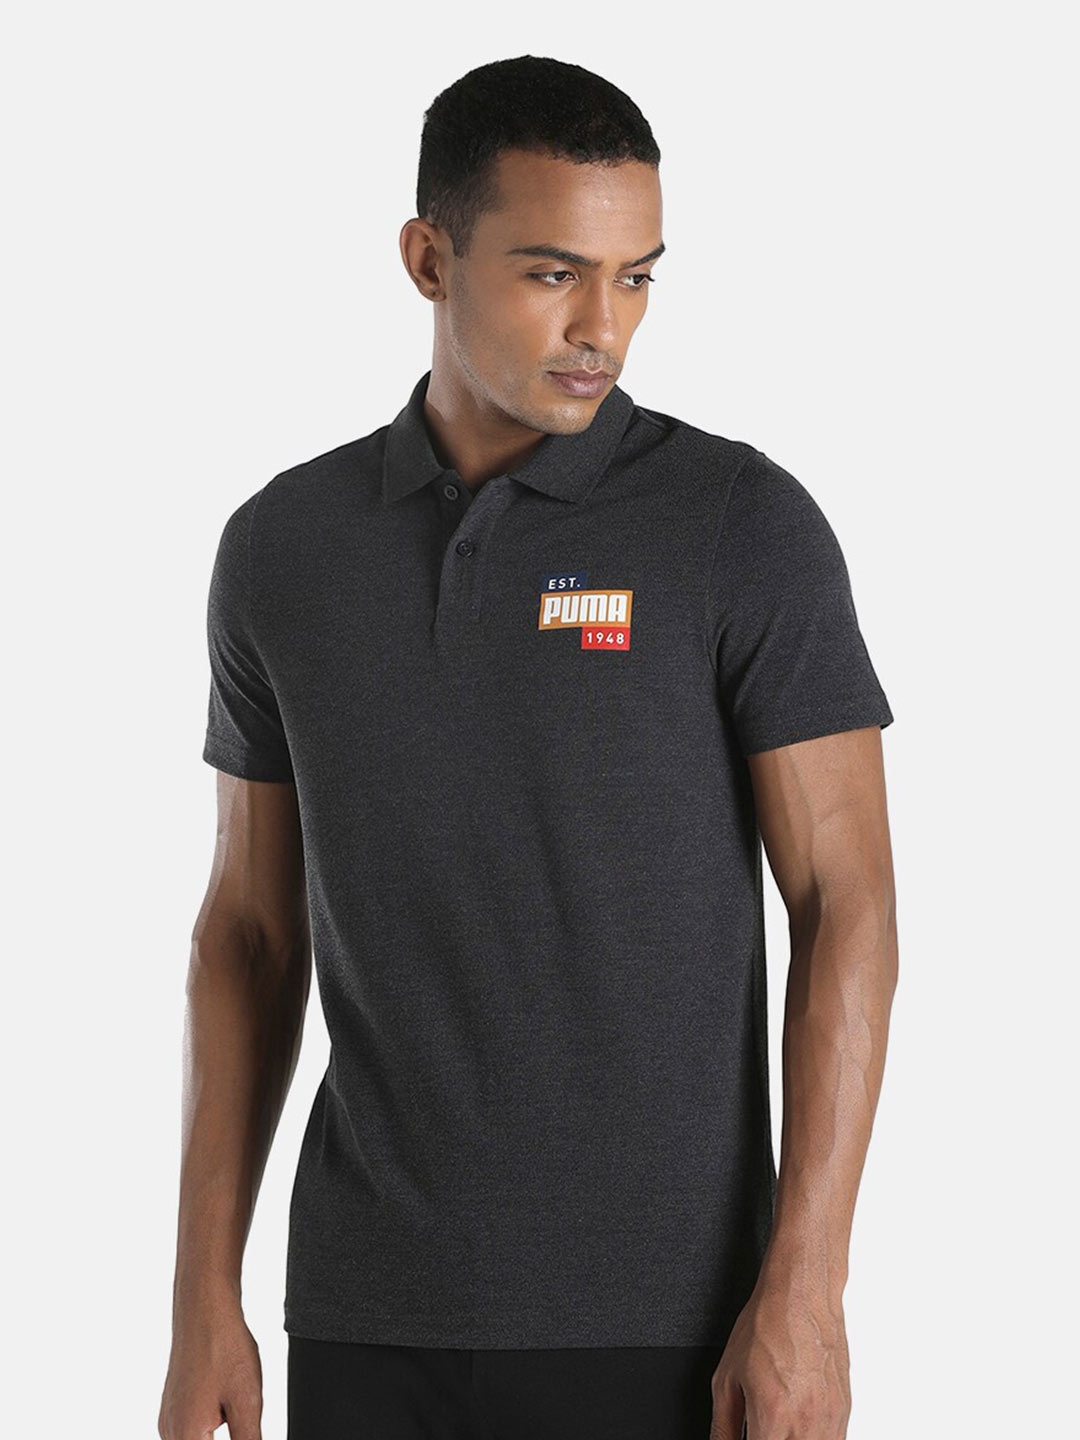 Buy Puma Men Black Graphic Slim Fit Polo T Shirt - Tshirts for Men ...